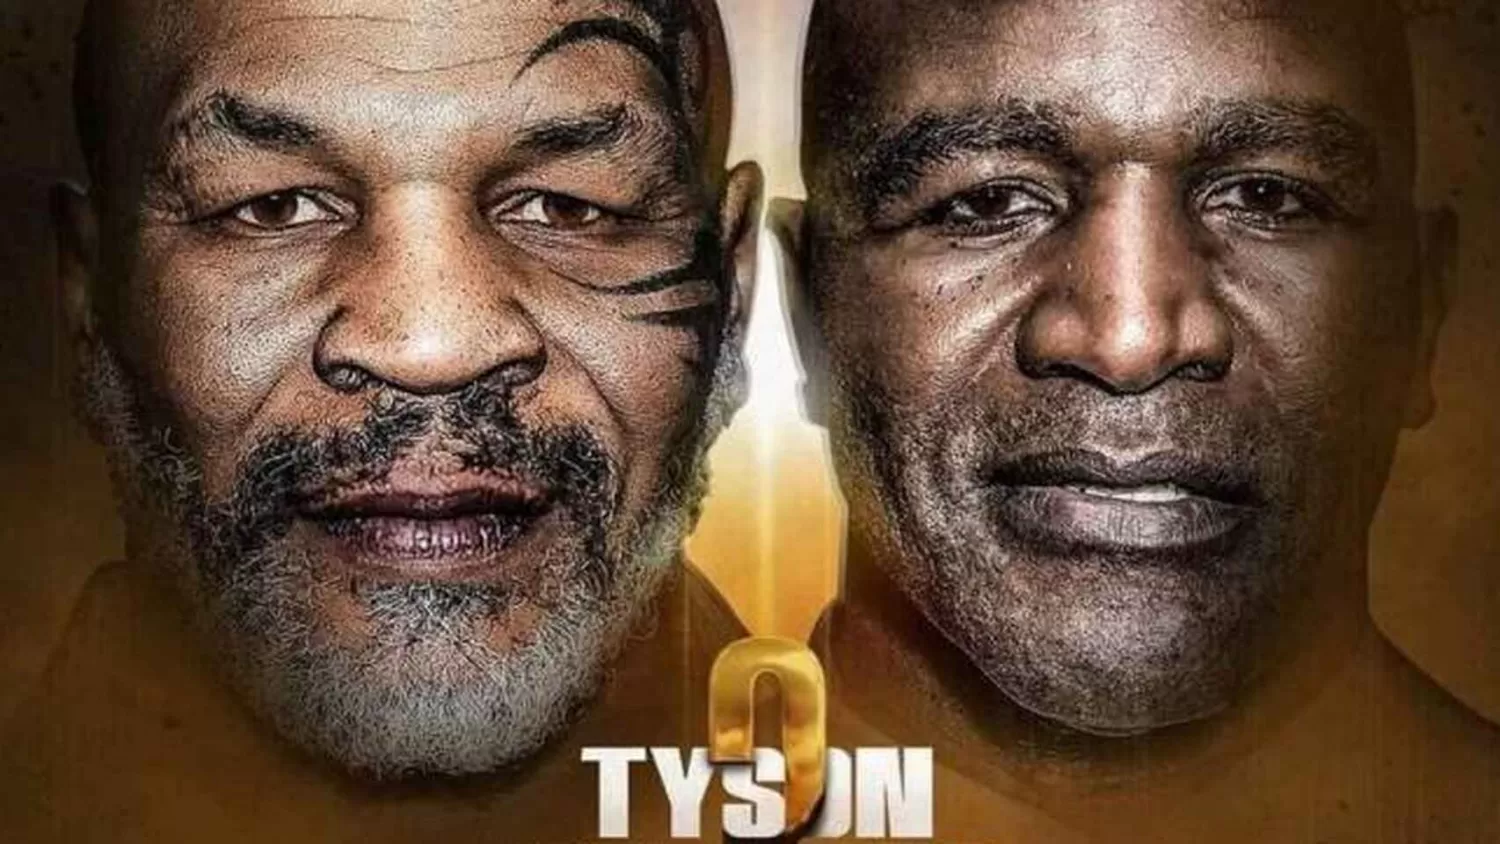 Finalmente, Tyson y Holyfield harán un combate de exhibición